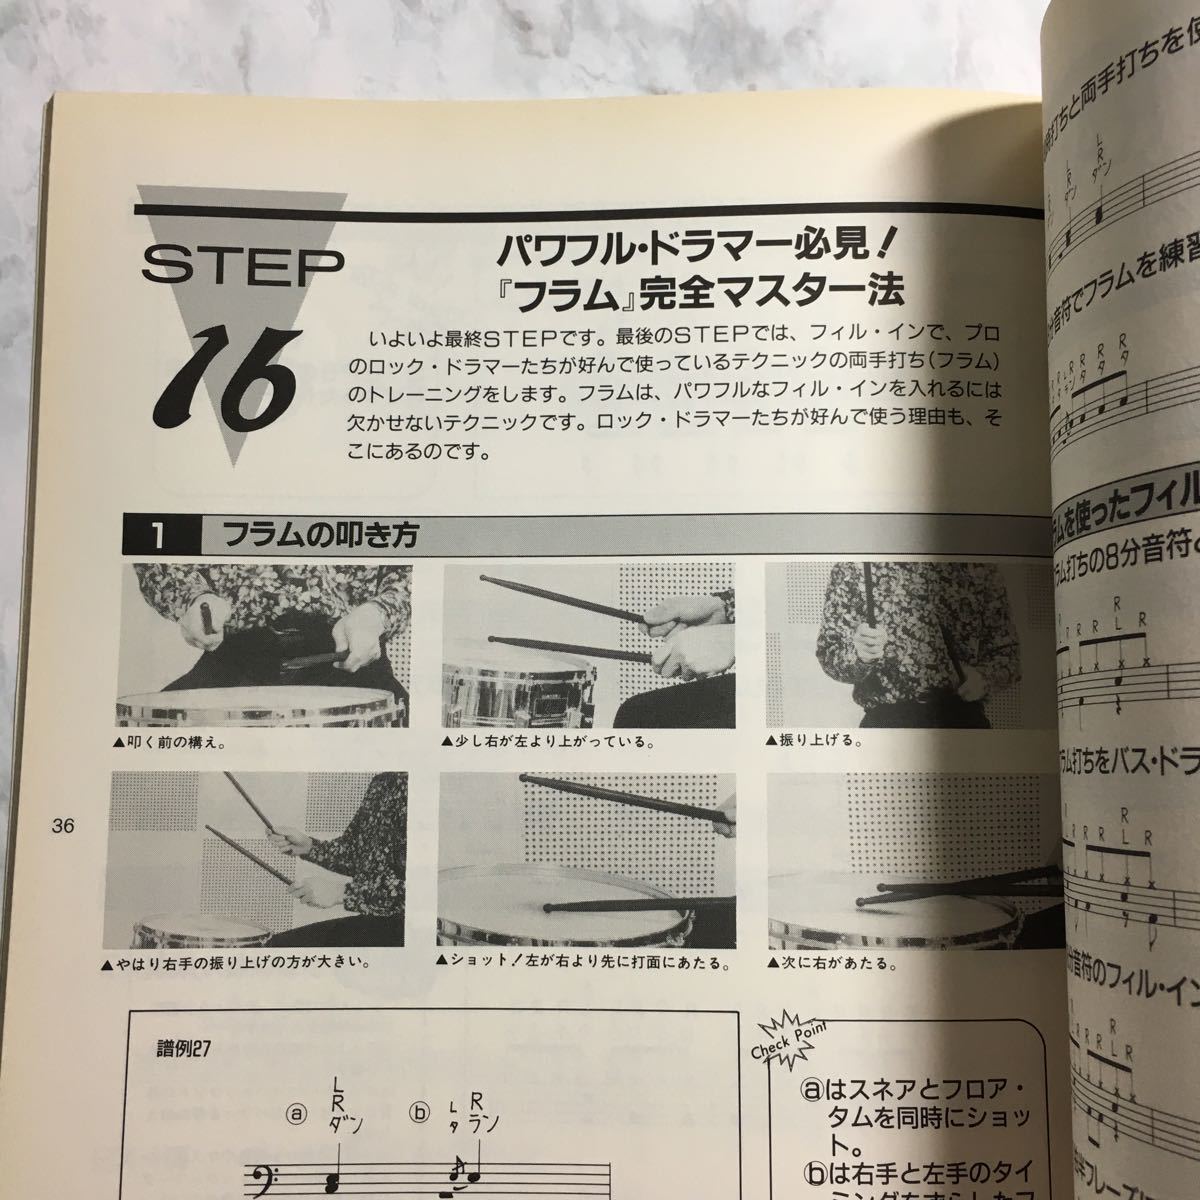 [ стоимость доставки 123 иен ~] каждый ... блокировка * барабан учебник sinko- музыка * практика урок . искривление TRAIN-TRAIN GLORIA DEAR FRIENDS M Runner журнал 